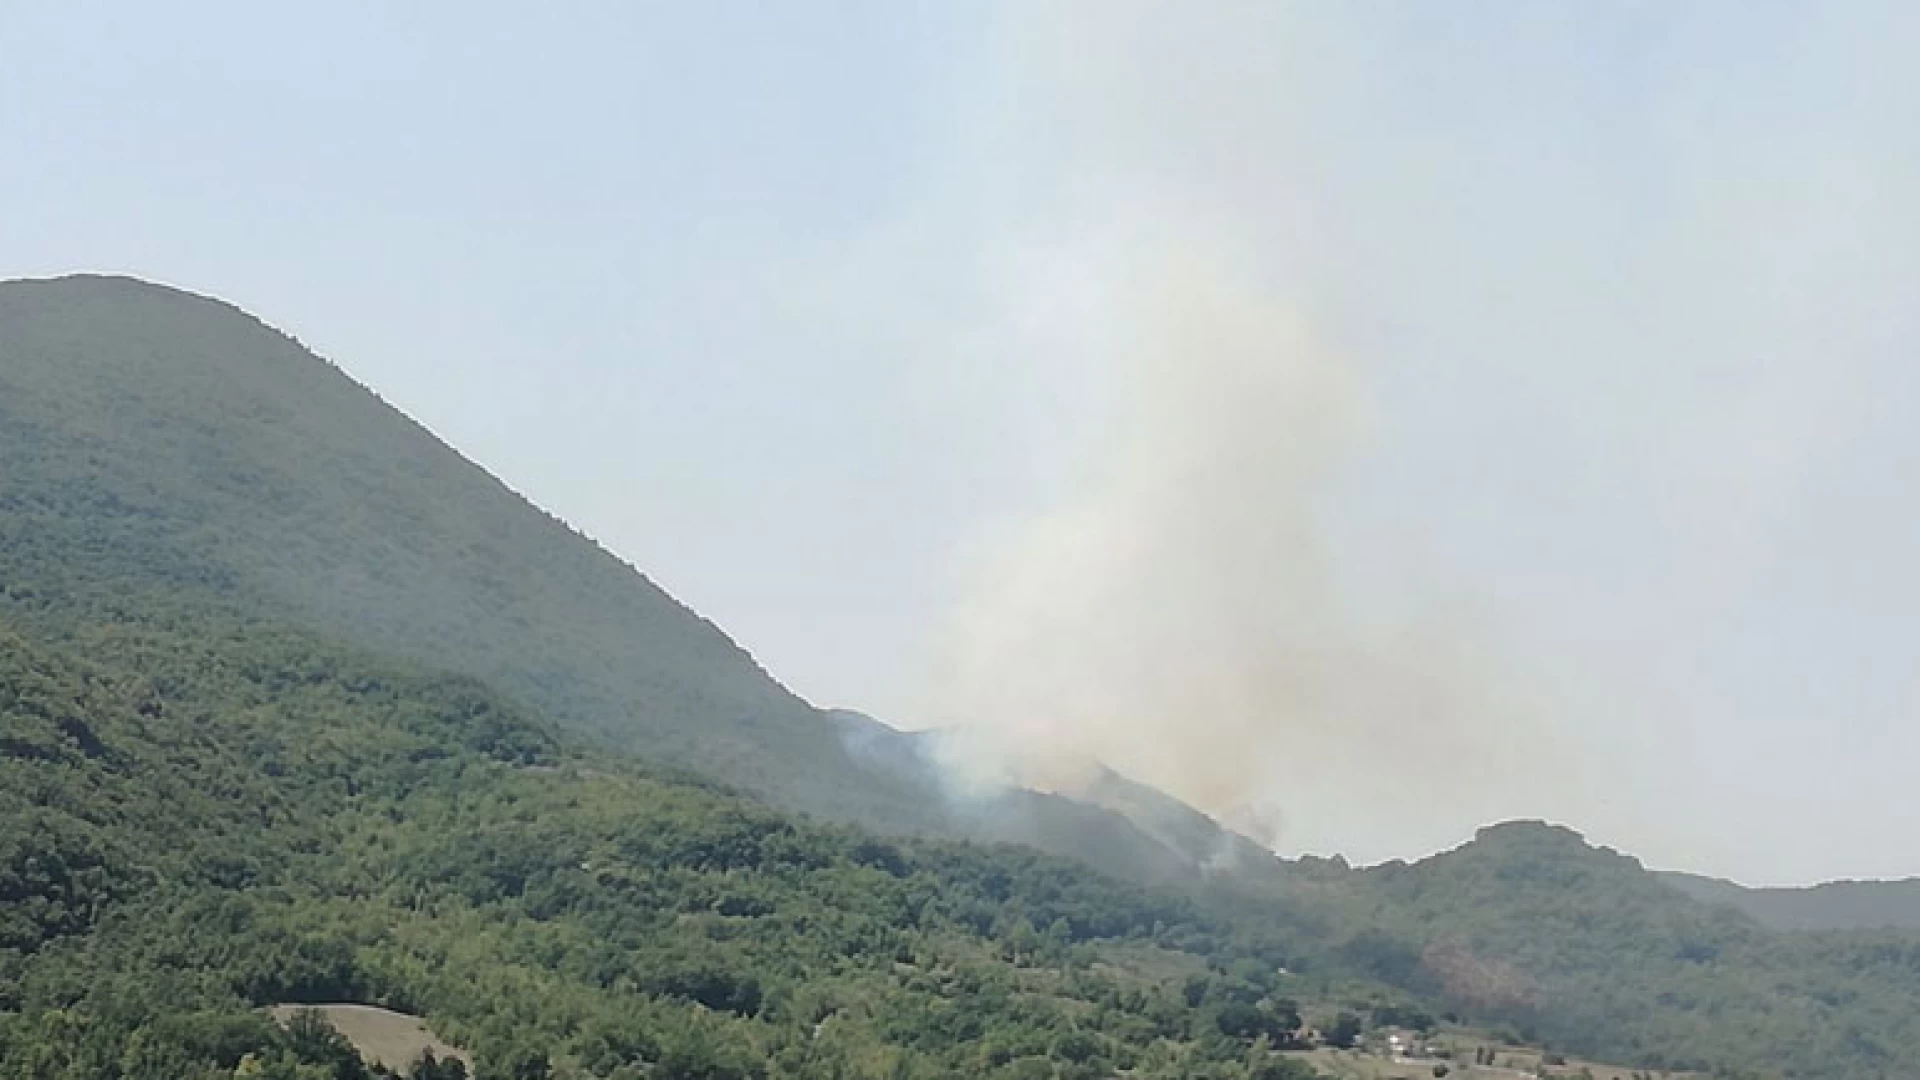 Colli a Volturno: devastante incendio sul territorio comunale in località Monte Tuoro. Operazioni di spegnimento difficili. Sul posto i Vigili del Fuoco.